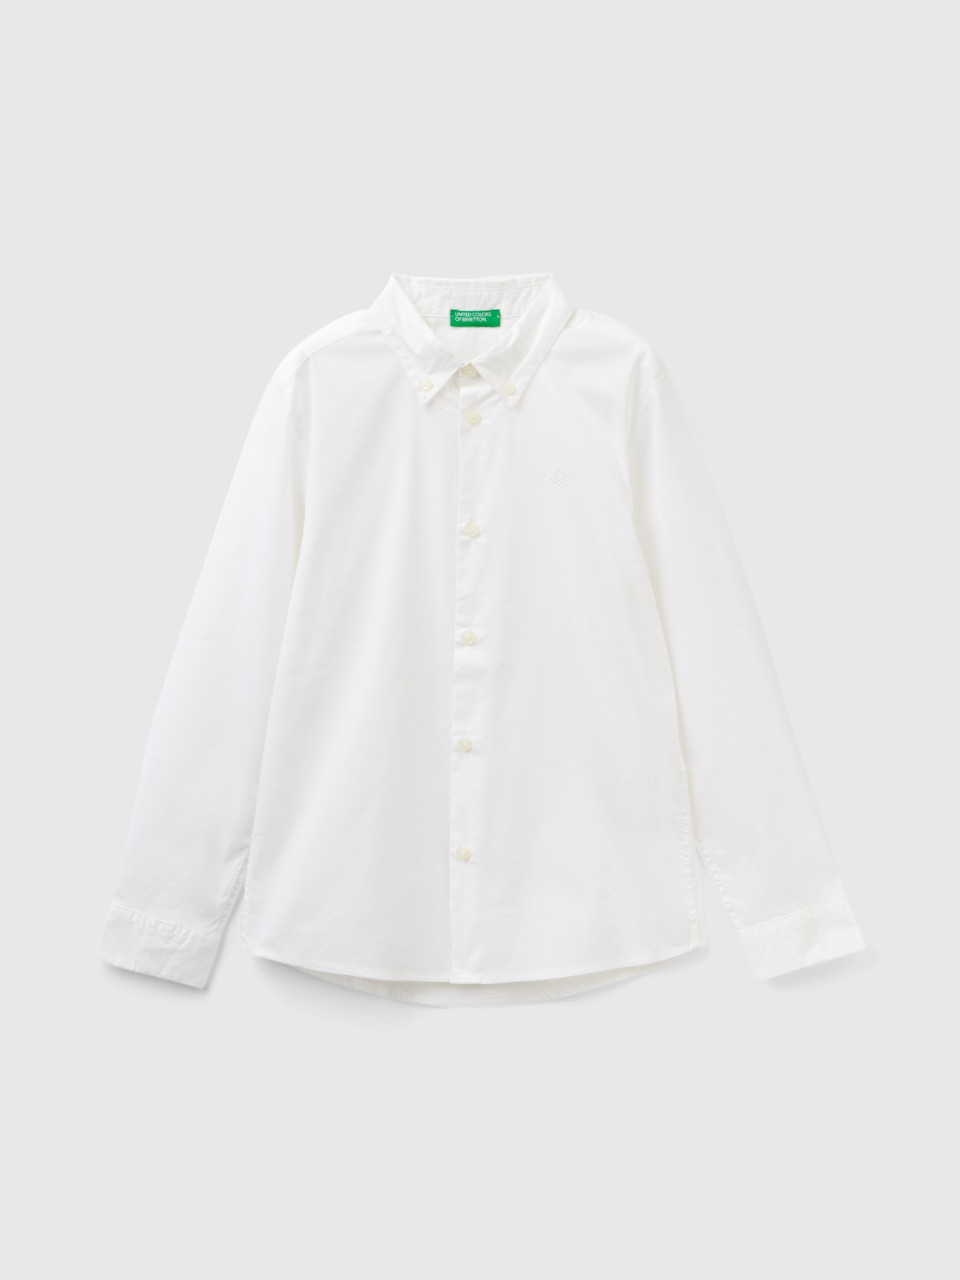 Benetton, Slim Fit Long Sleeve Shirt, White, Kids